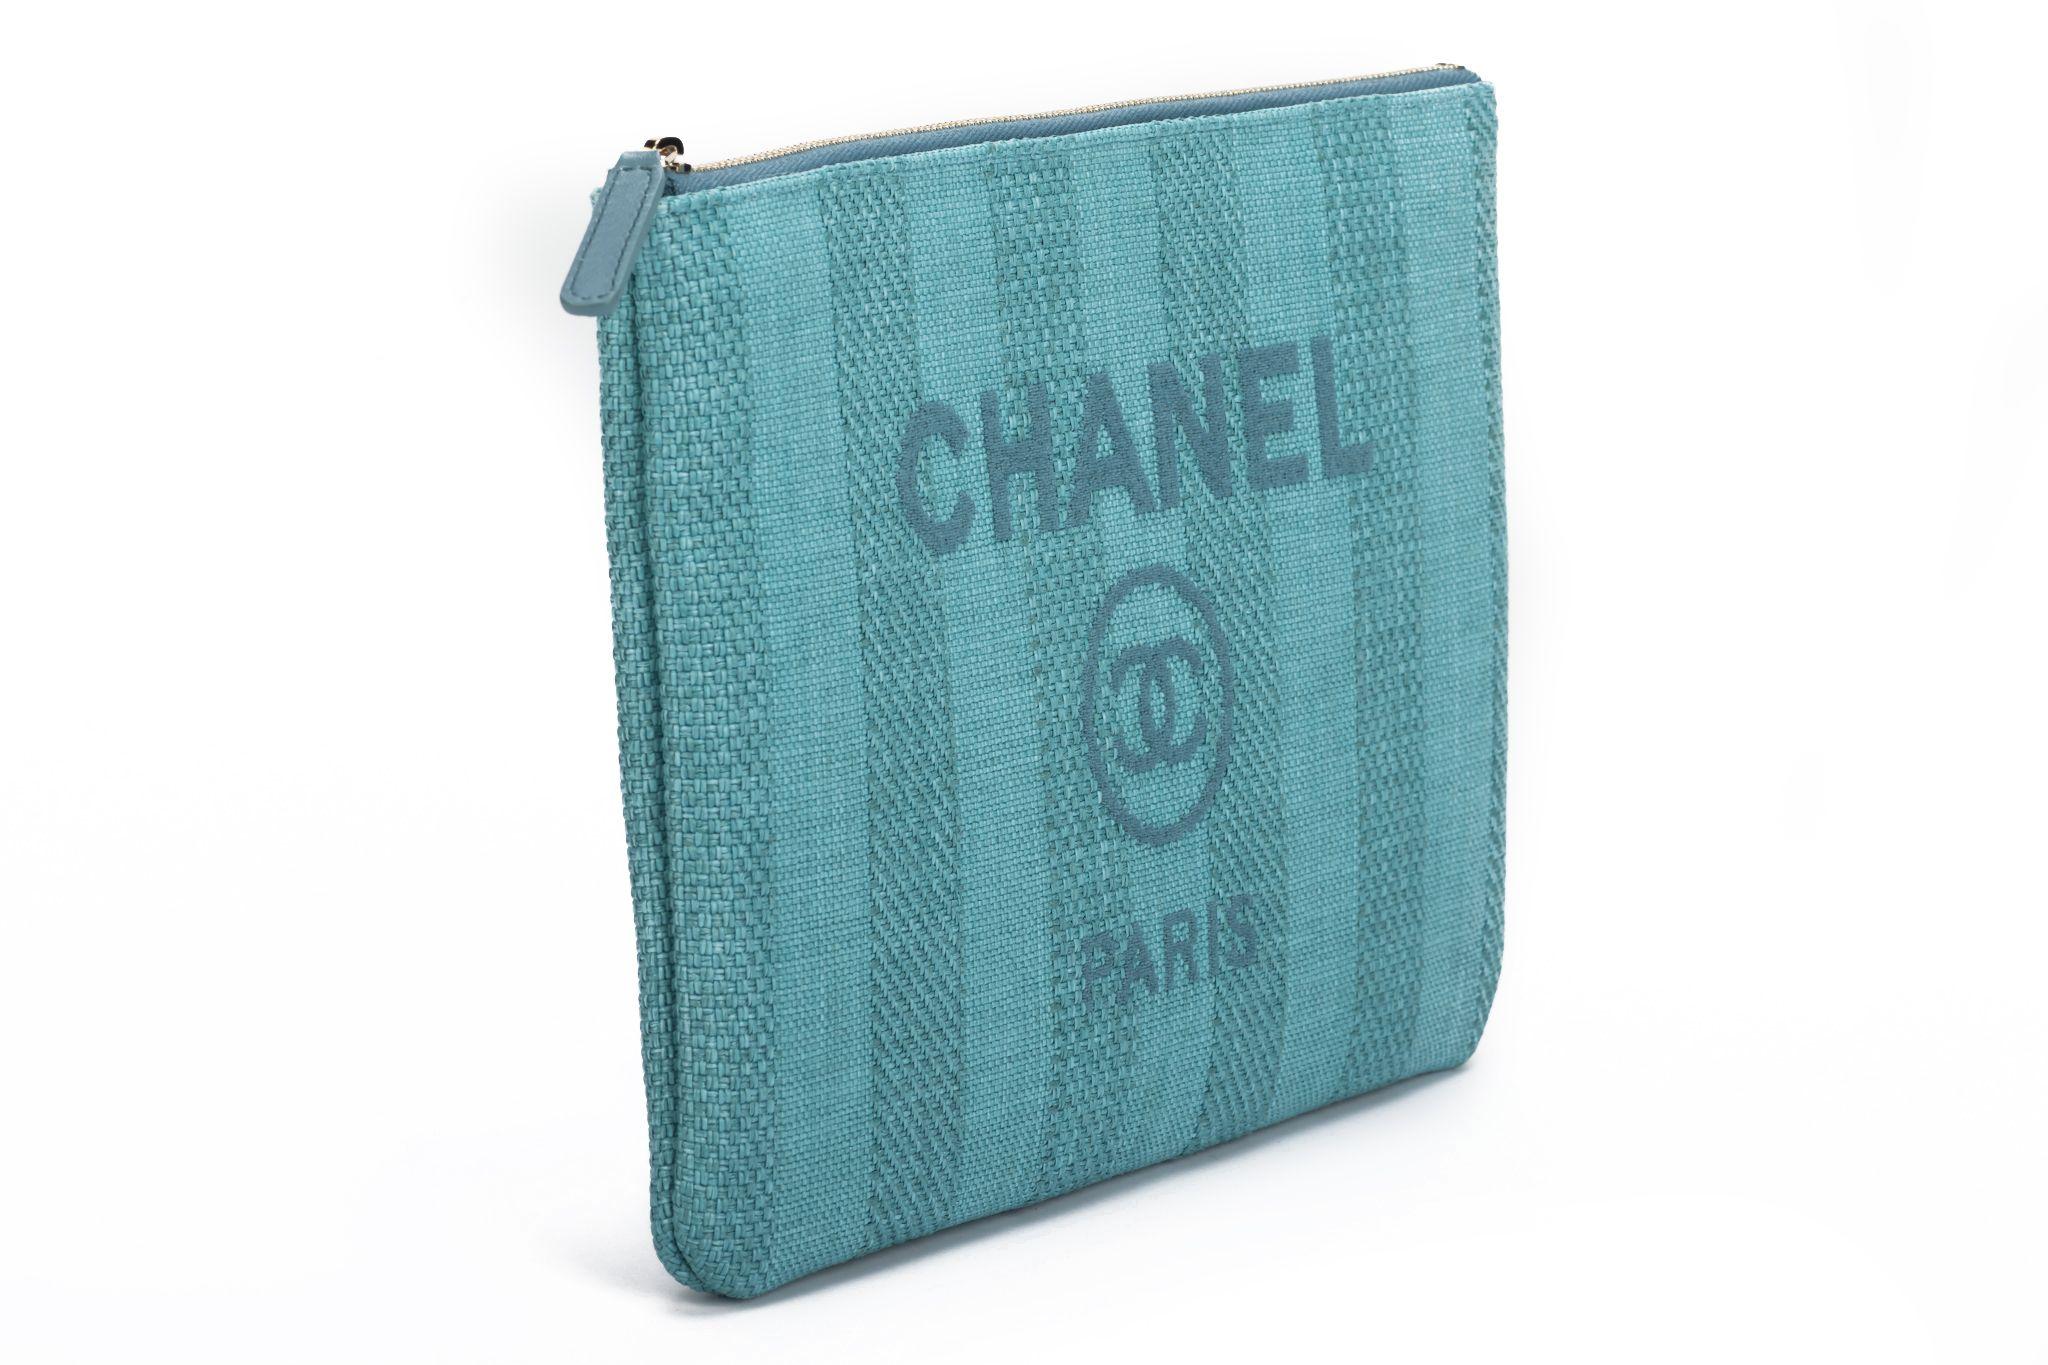 Nouvelle pochette Deauville de Chanel en tissu rayé aqua. Collection 29. Livré avec hologramme, carte d'identité, housse de protection et boîte.
